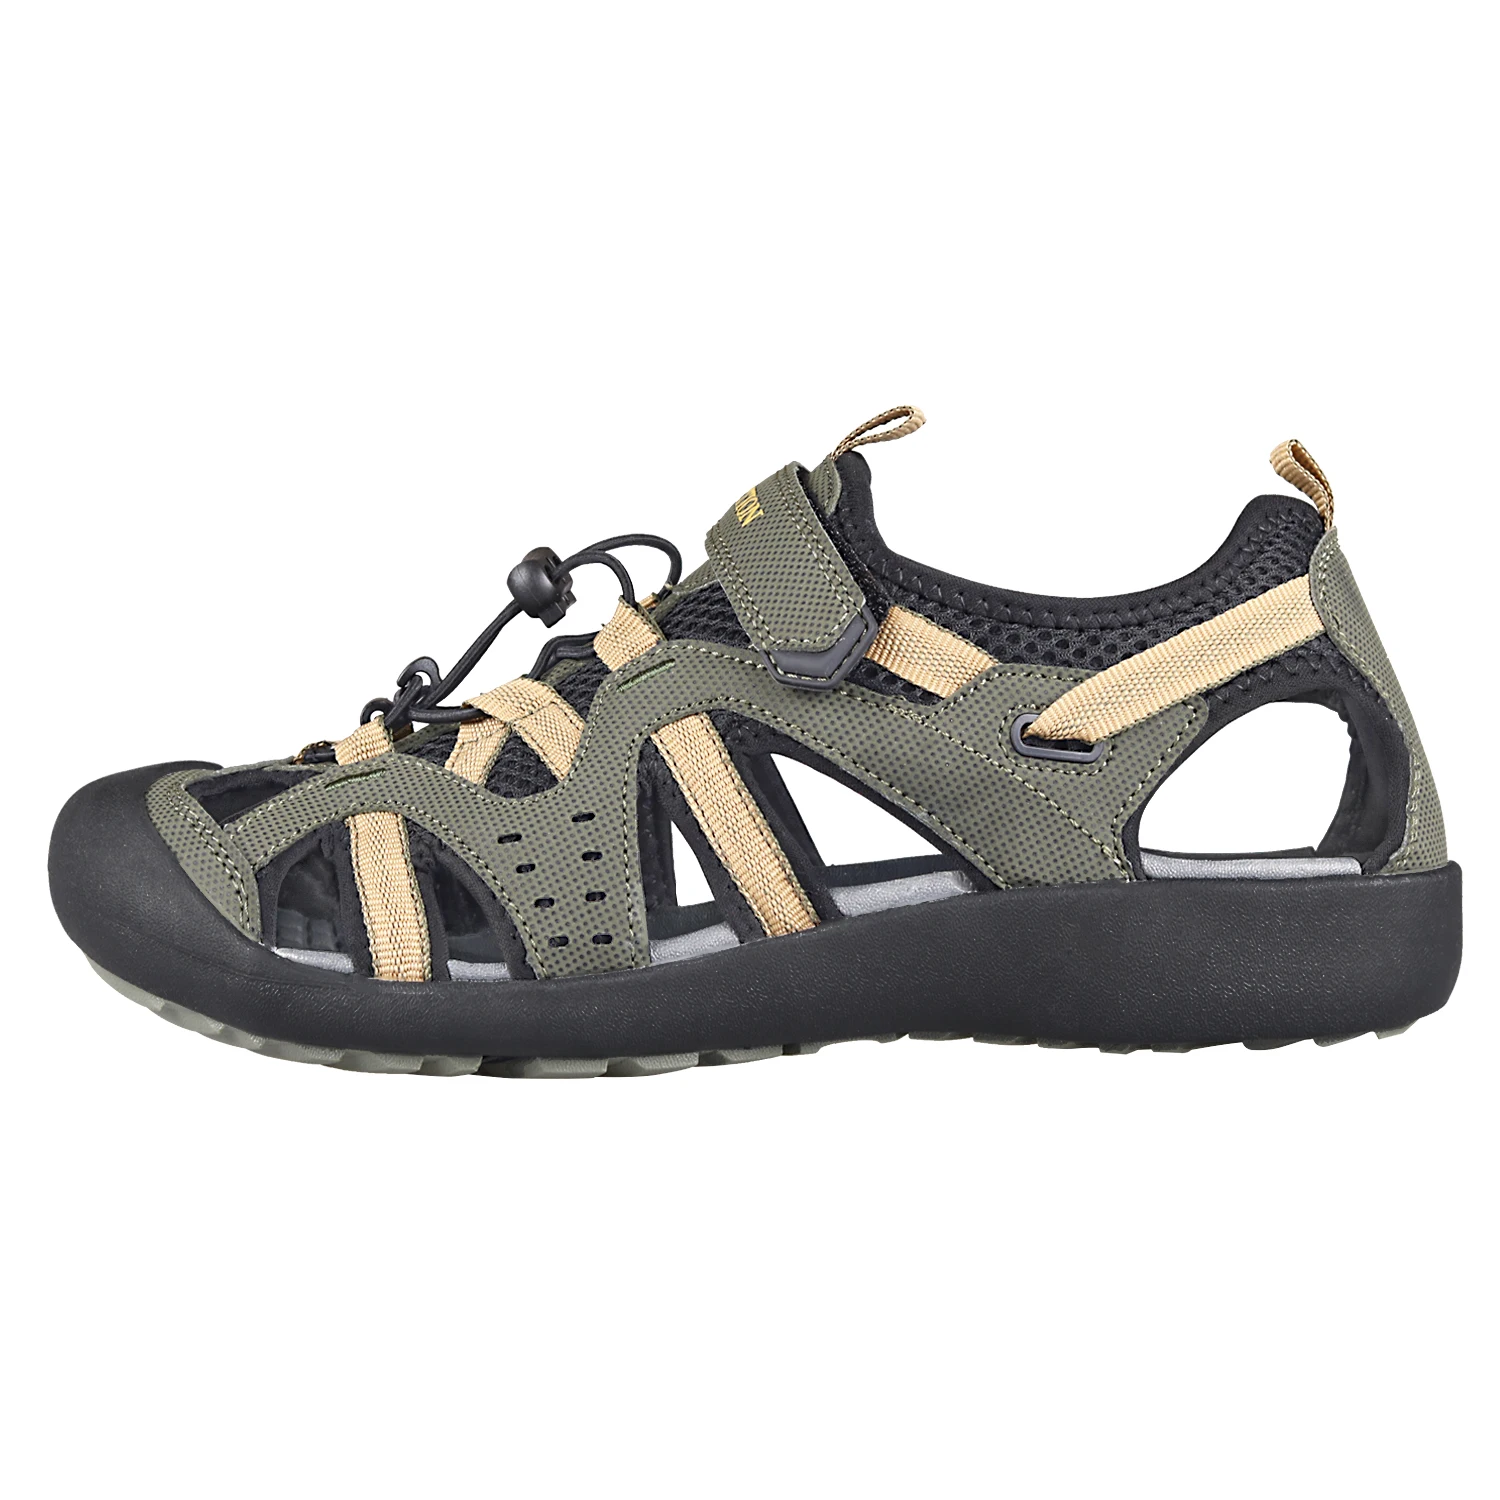 Men Sandals Fashion New Beach Trekking Shoes Breathable Non-Slip Quick D... - $72.34